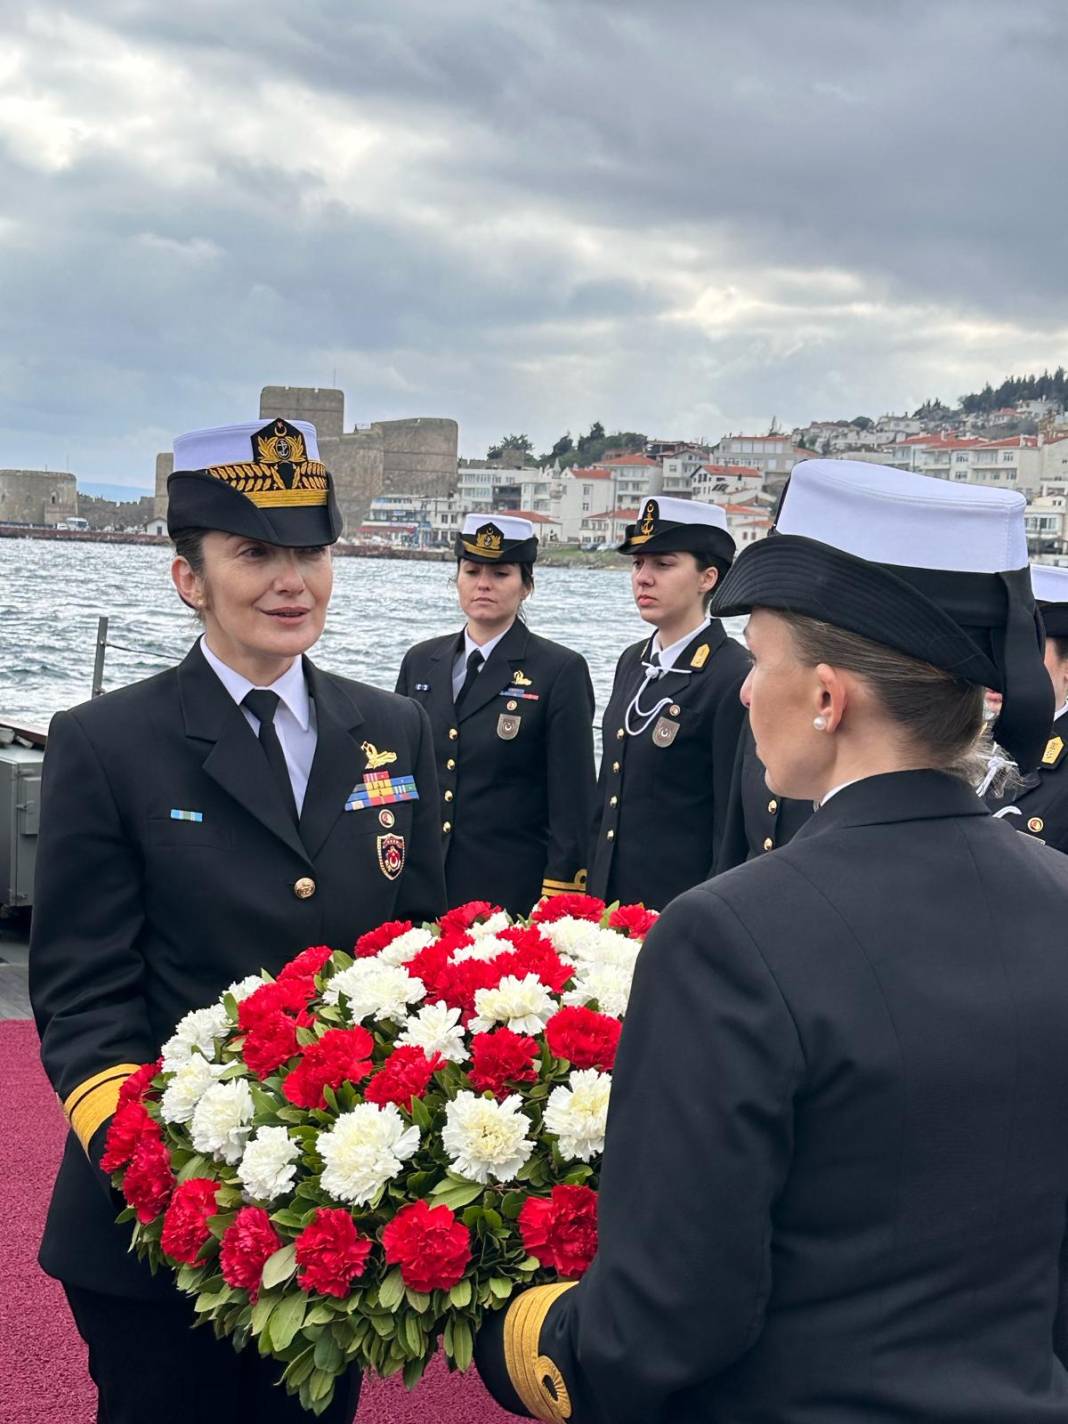 İlk kadın amirali Gökçen Fırat Deniz Harp Okulu öğrencileriyle TCG Nusret'te buluştu 14